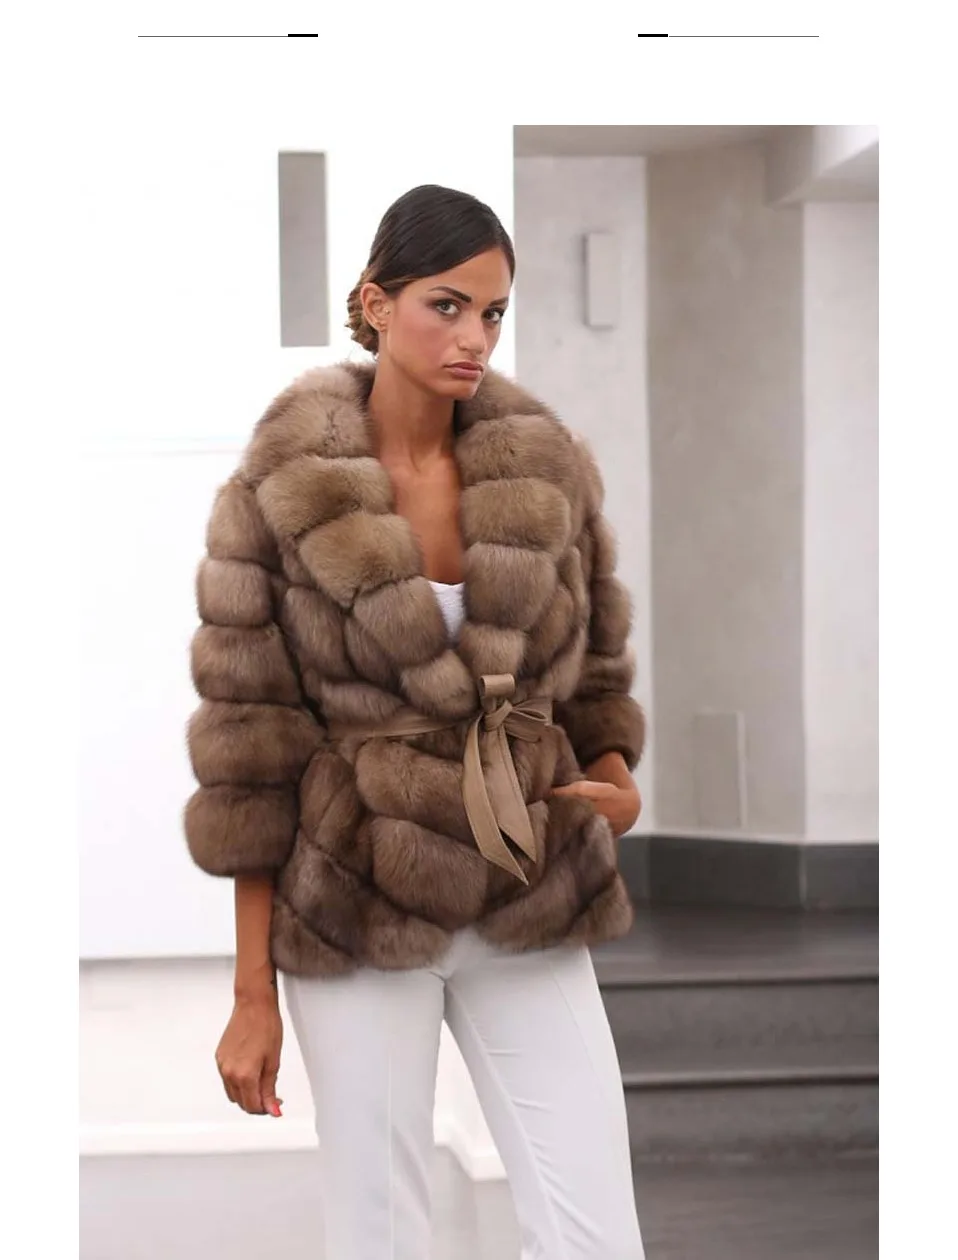 Меховая Sarcar, натуральное лисьее меховое зимнее пальто, куртка с отворотом, утолщенная, рукав девять четверти, Женское пальто, Новое Женское пальто размера плюс, верхняя одежда, куртка